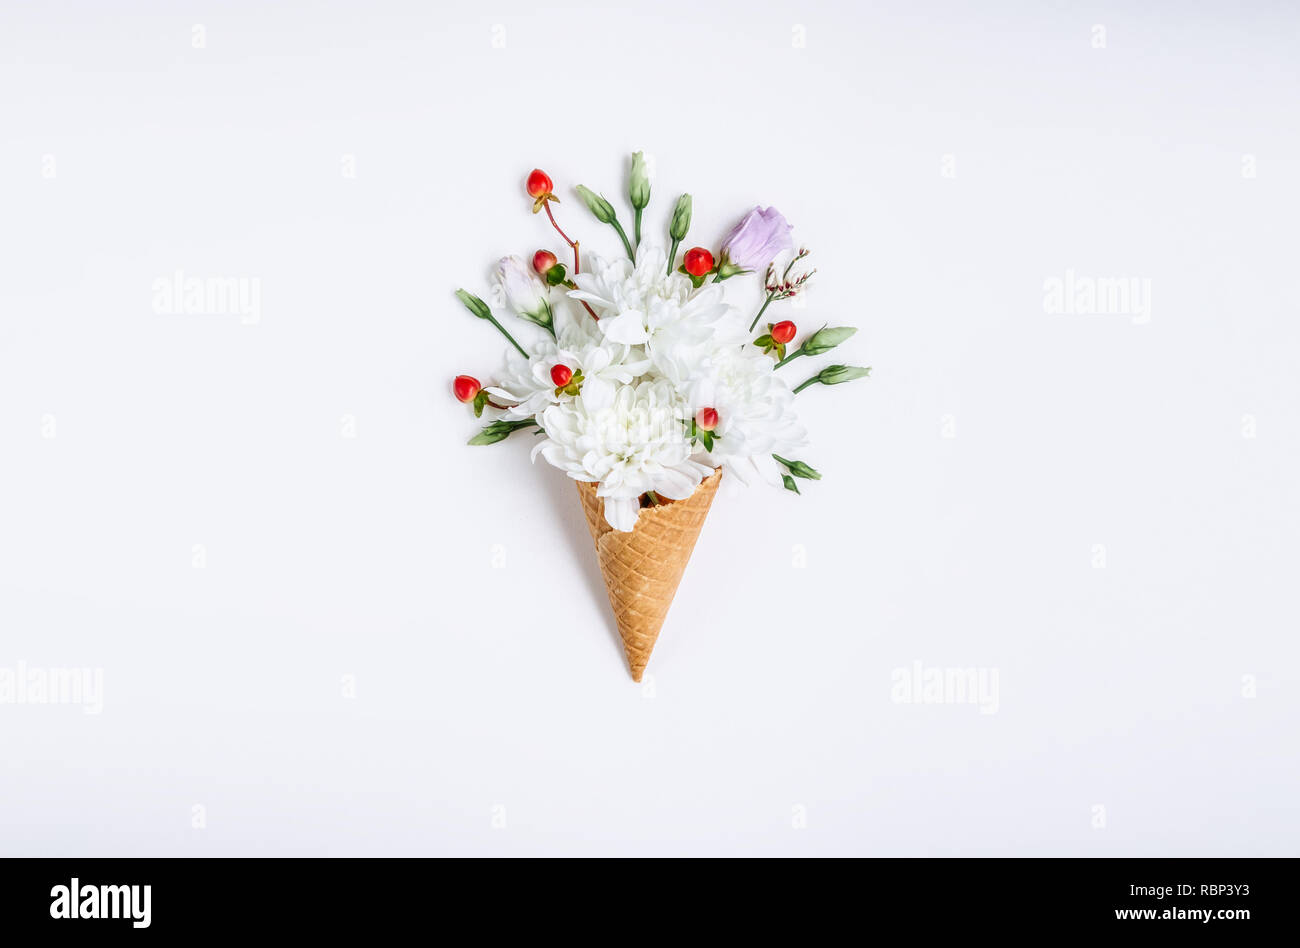 Schönen Blumenstrauß Blume in Eis auf weißem Hintergrund. Blumenschmuck, Flachbild Styling legen. Ansicht von oben. Kreative still life Idee, Feder wallpape Stockfoto